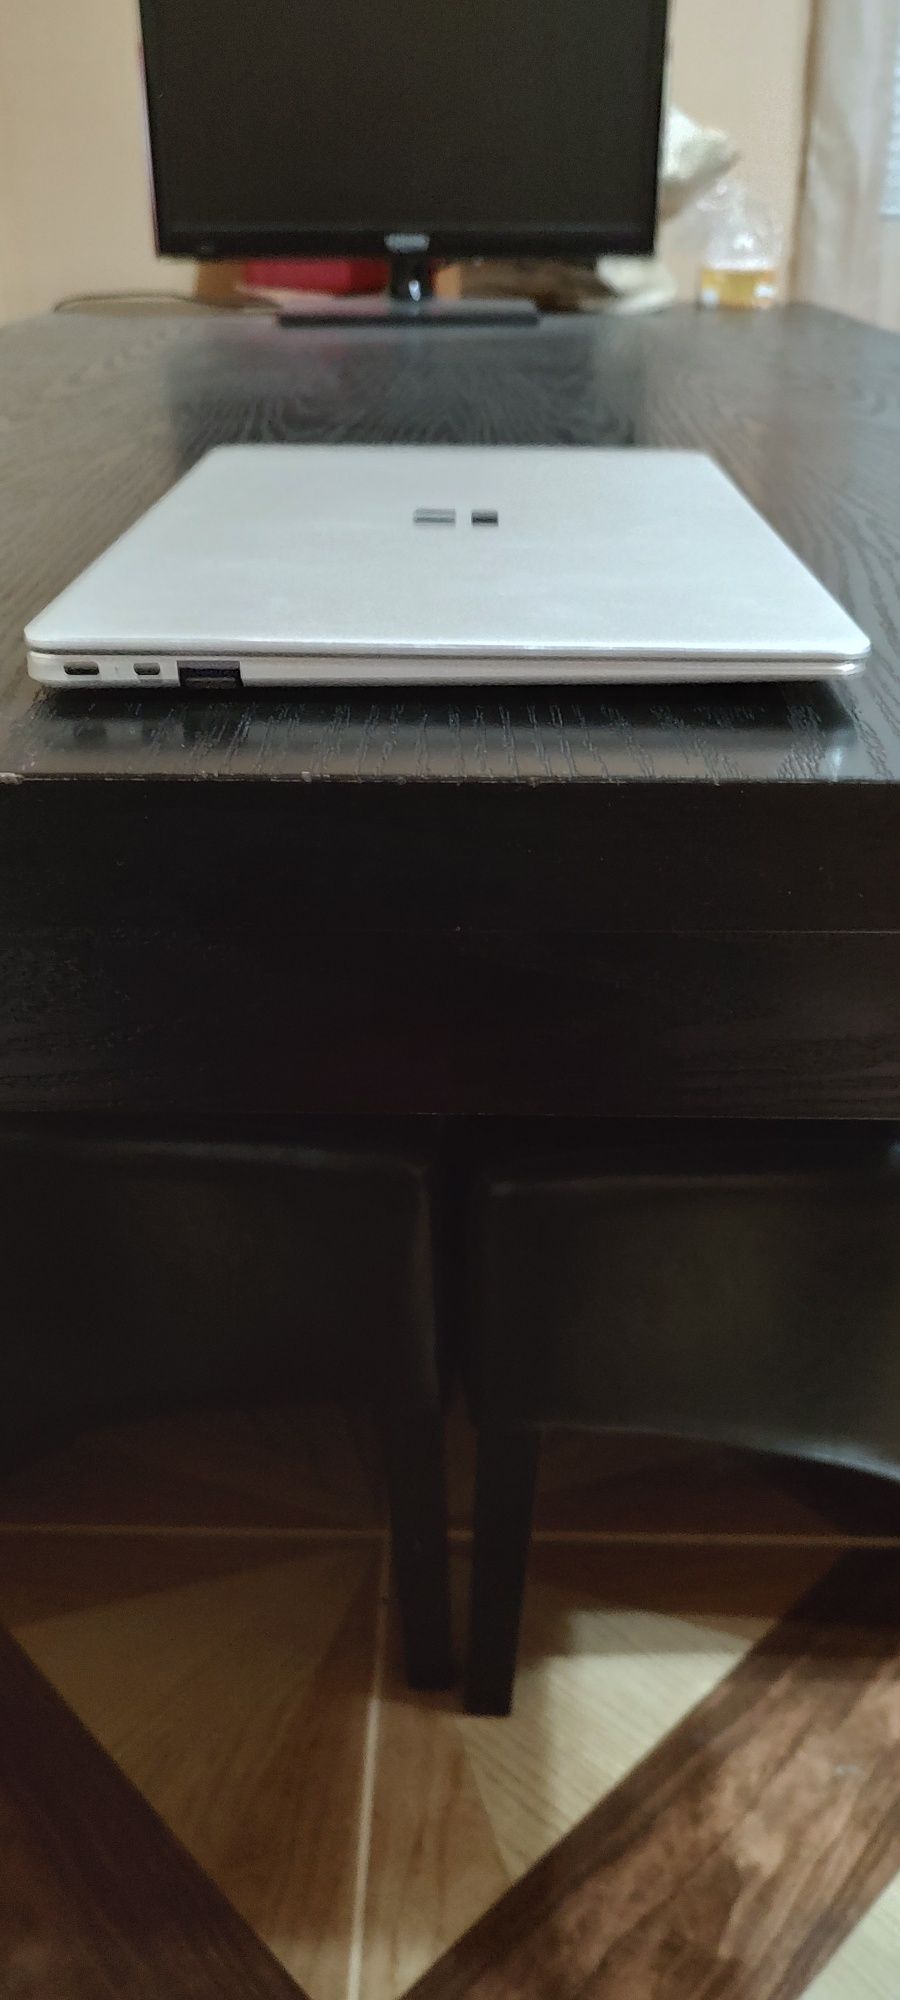 Laptop Trekstor slim carcasă de aluminiu.